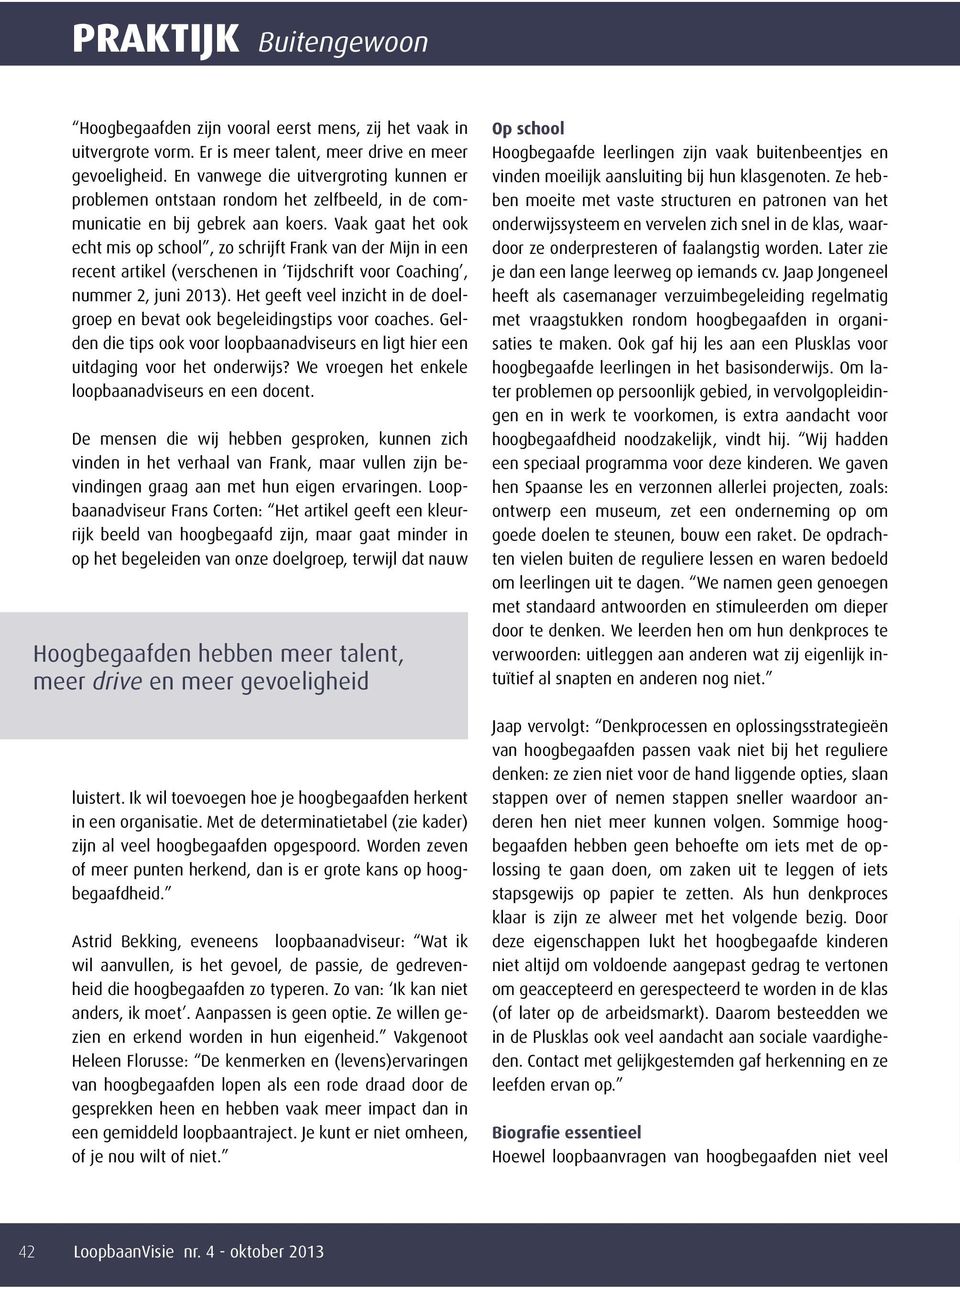 Vaak gaat het ook echt mis op school, zo schrijft Frank van der Mijn in een recent artikel (verschenen in Tijdschrift voor Coaching, nummer 2, juni 2013).